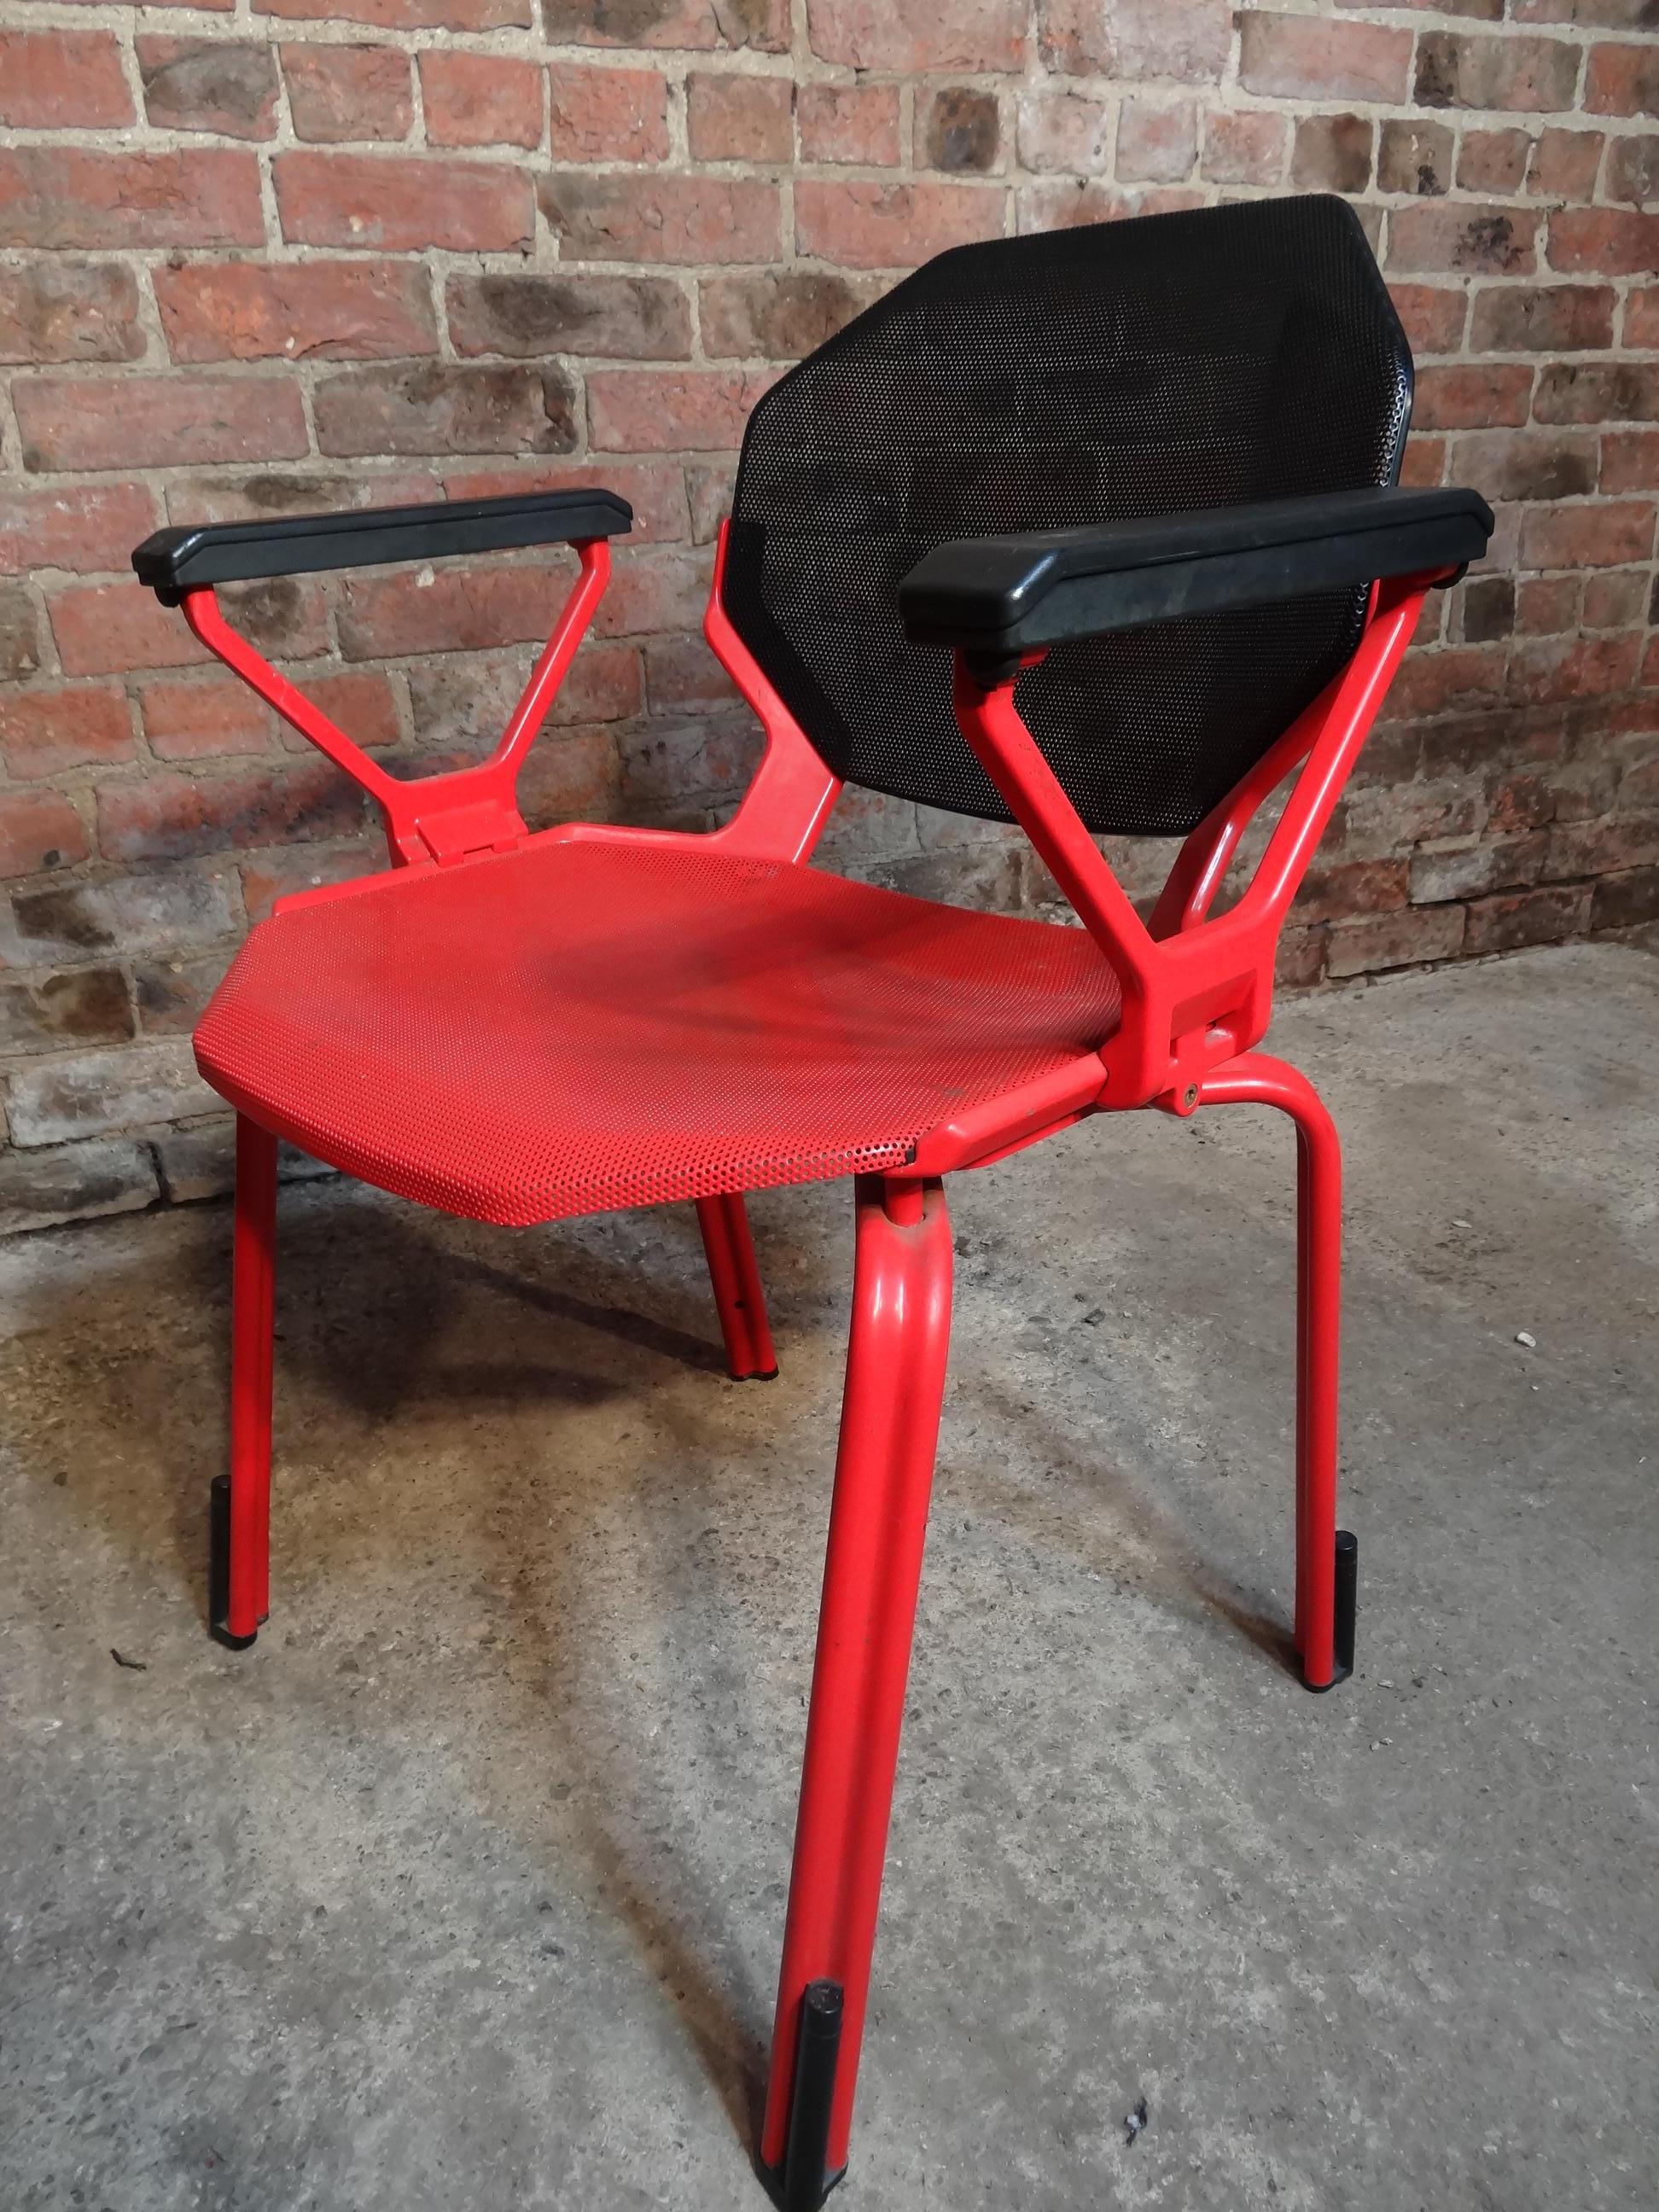 Froscher entworfen Retro 1970 rot Metall Büro / Schreibtisch Sessel für Sitform, atemberaubende entworfen von Froscher für Sitform, original Designer Metallstühle, die Stühle sind in sehr gutem Vintage Zustand.

Der Lieferpreis versteht sich pro